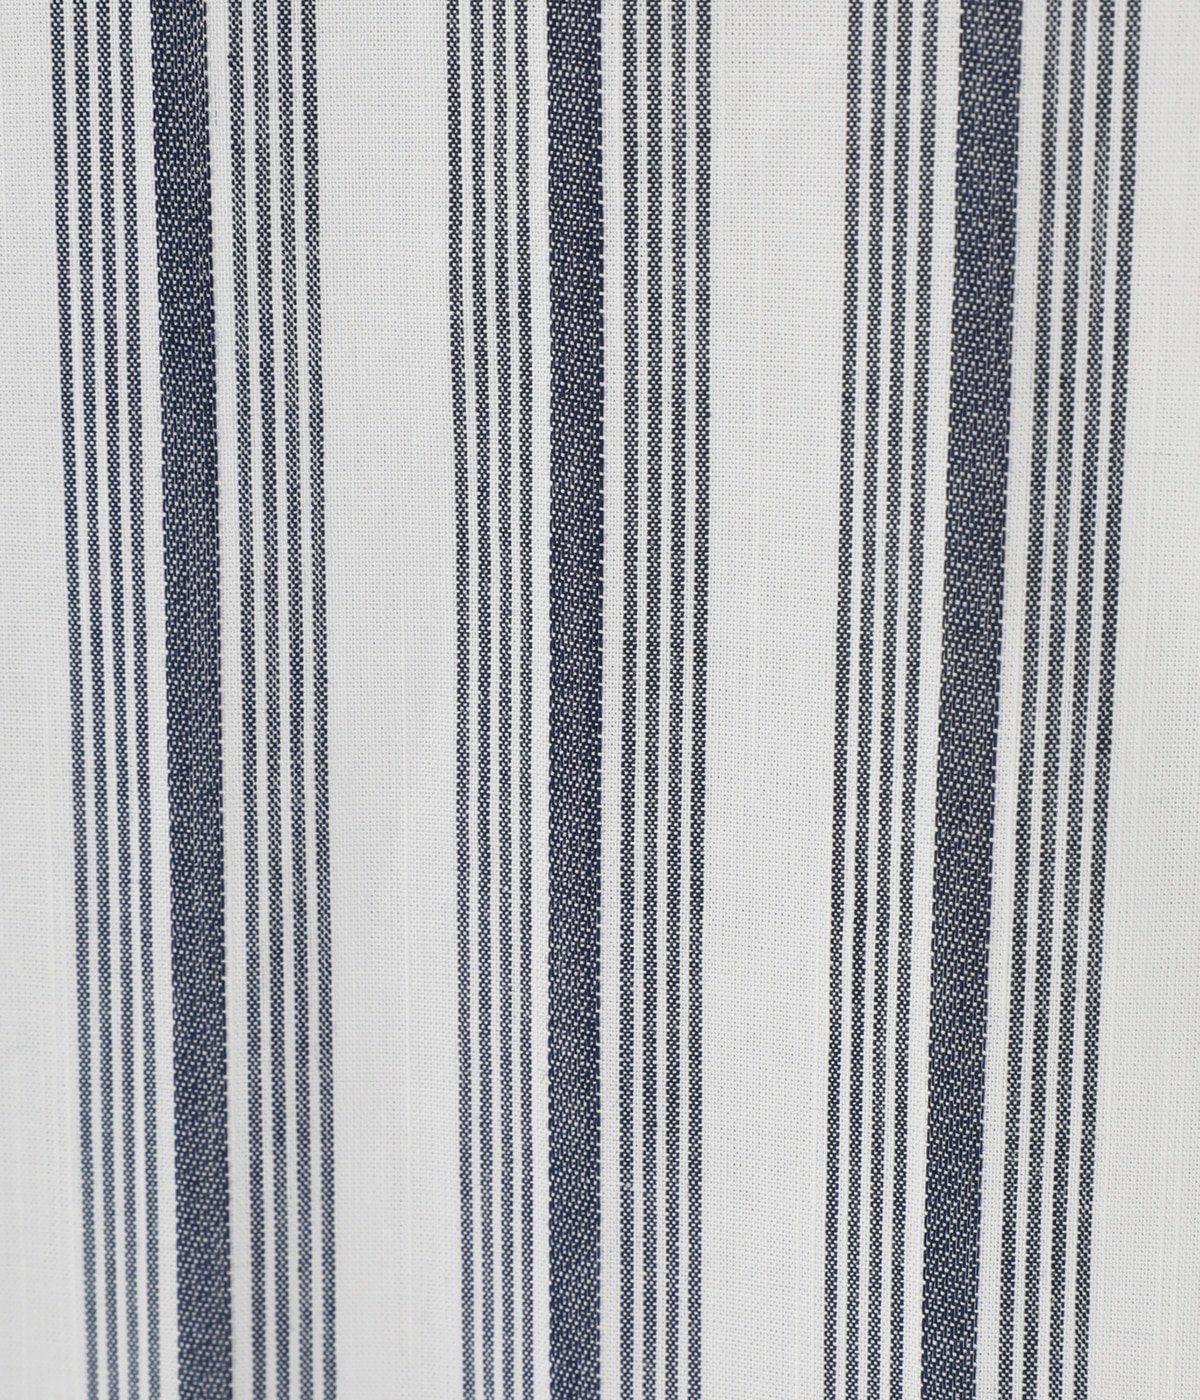 Pullover Stripe S/SL Shirt | BOTT(ボット) / トップス 半袖シャツ